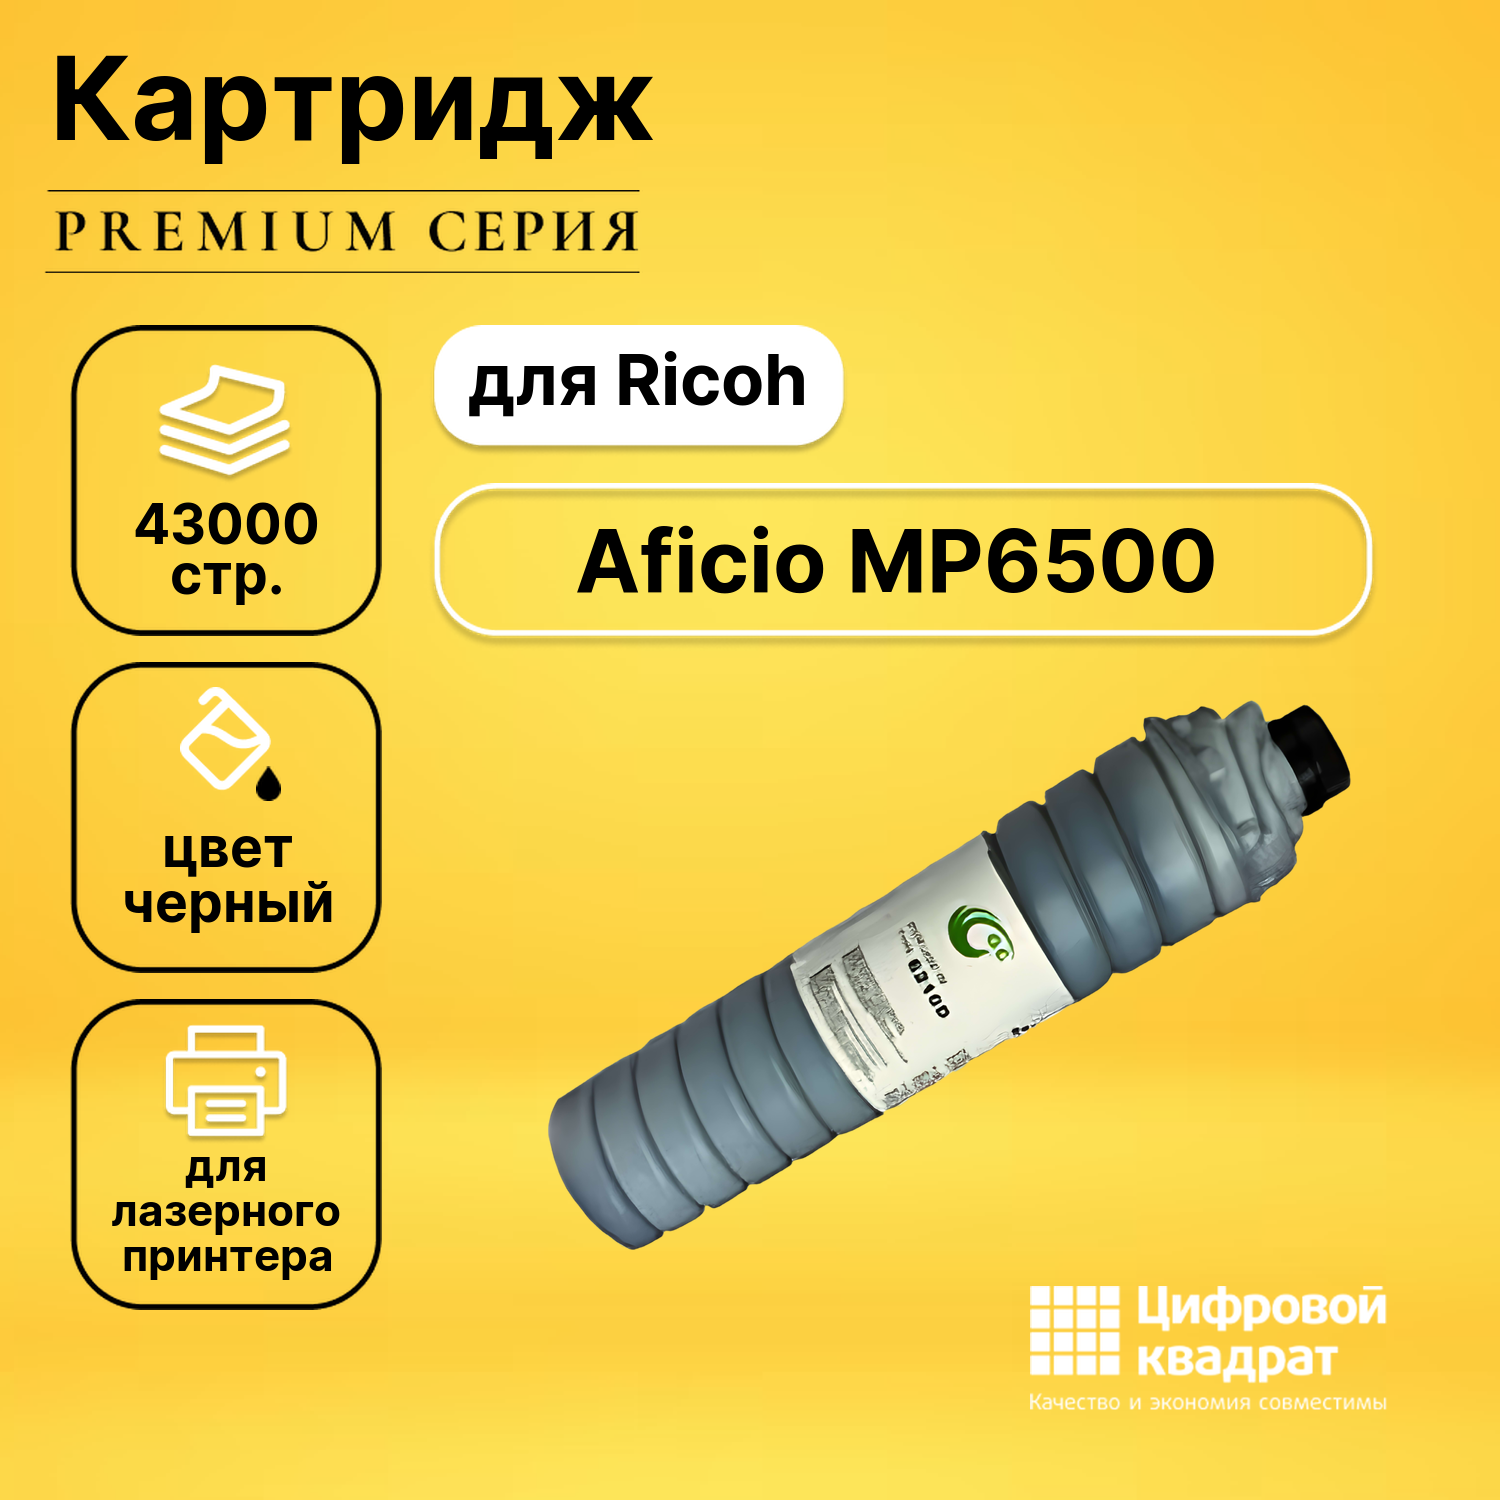 Картридж DS для Ricoh Aficio MP6500 совместимый